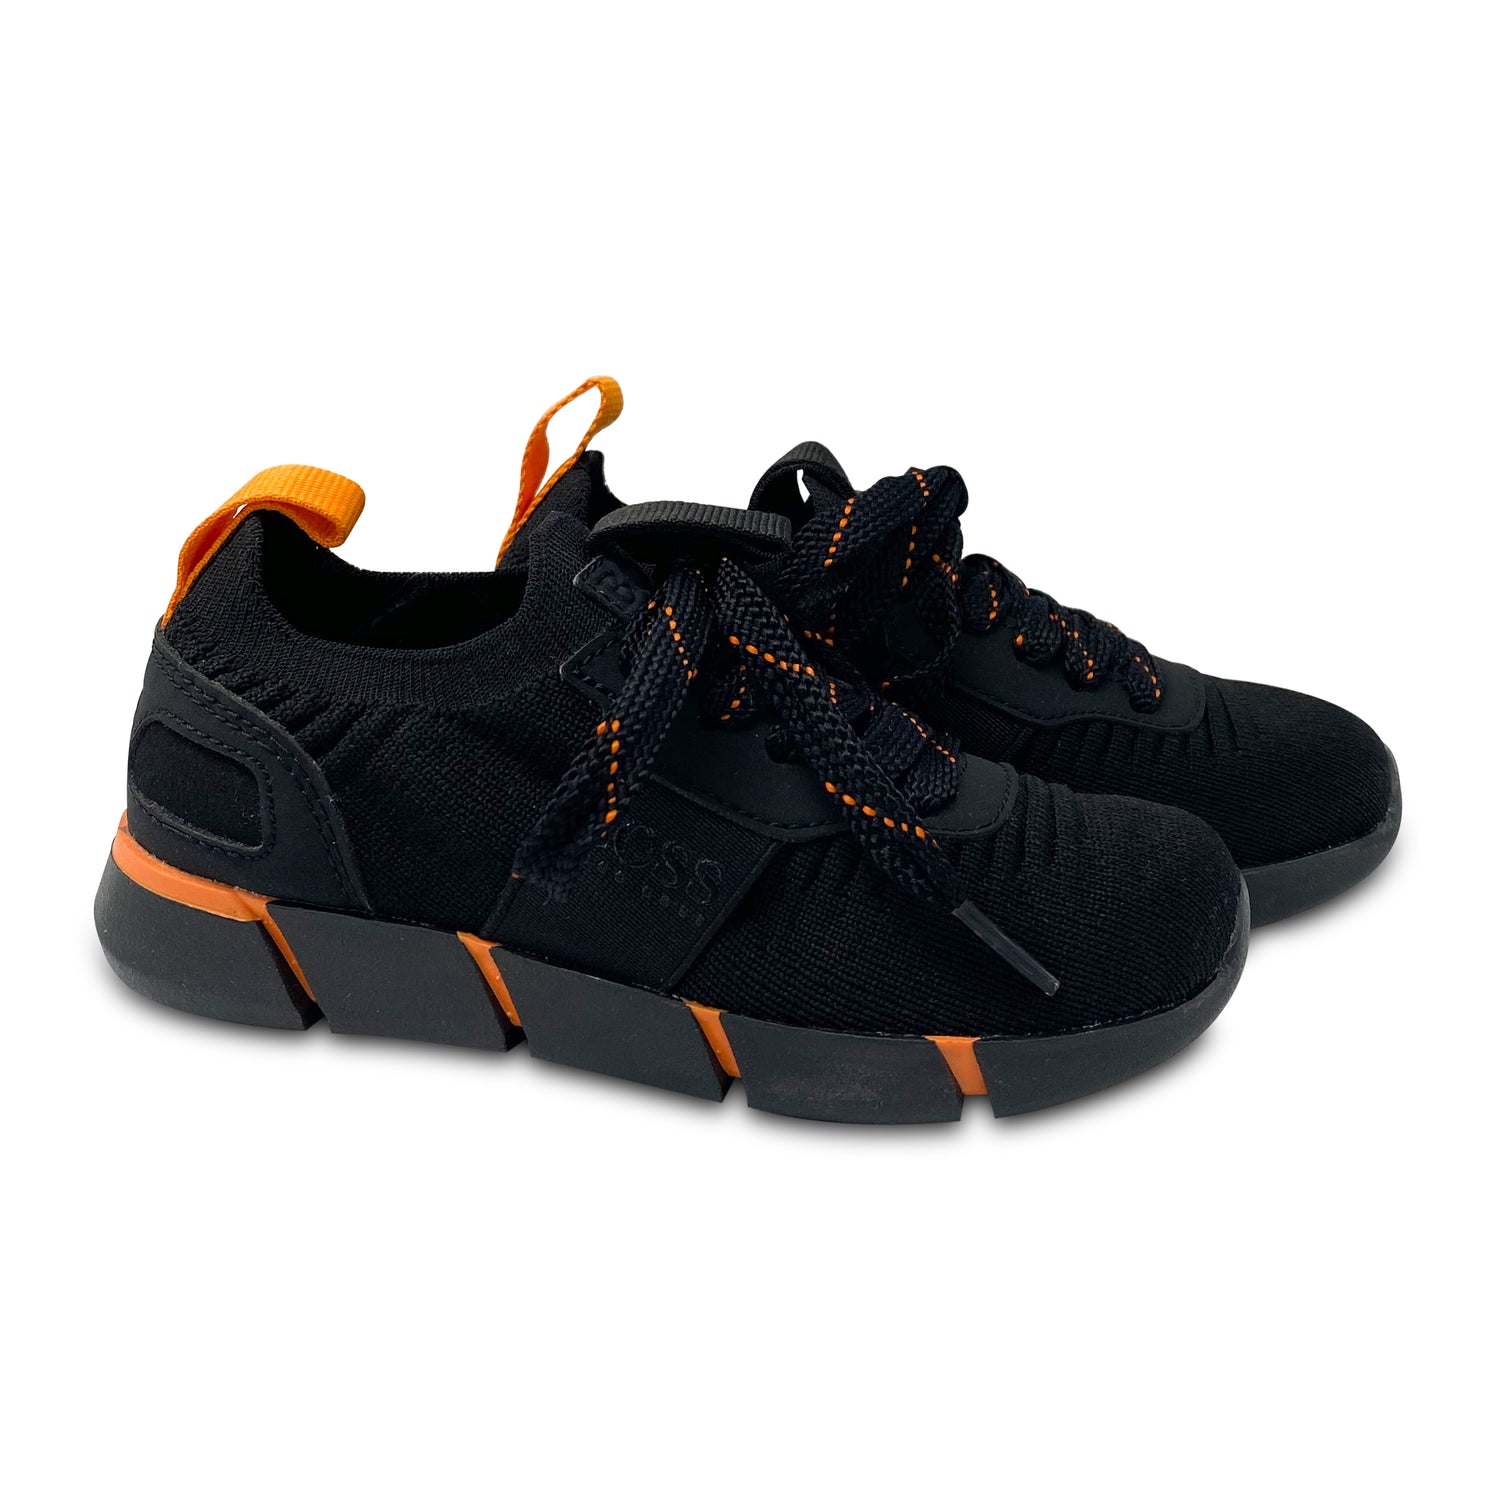 Hugo Boss Black Orange Slip On Knit Lace Sock Sneaker J29265 Laced Shoe Inc